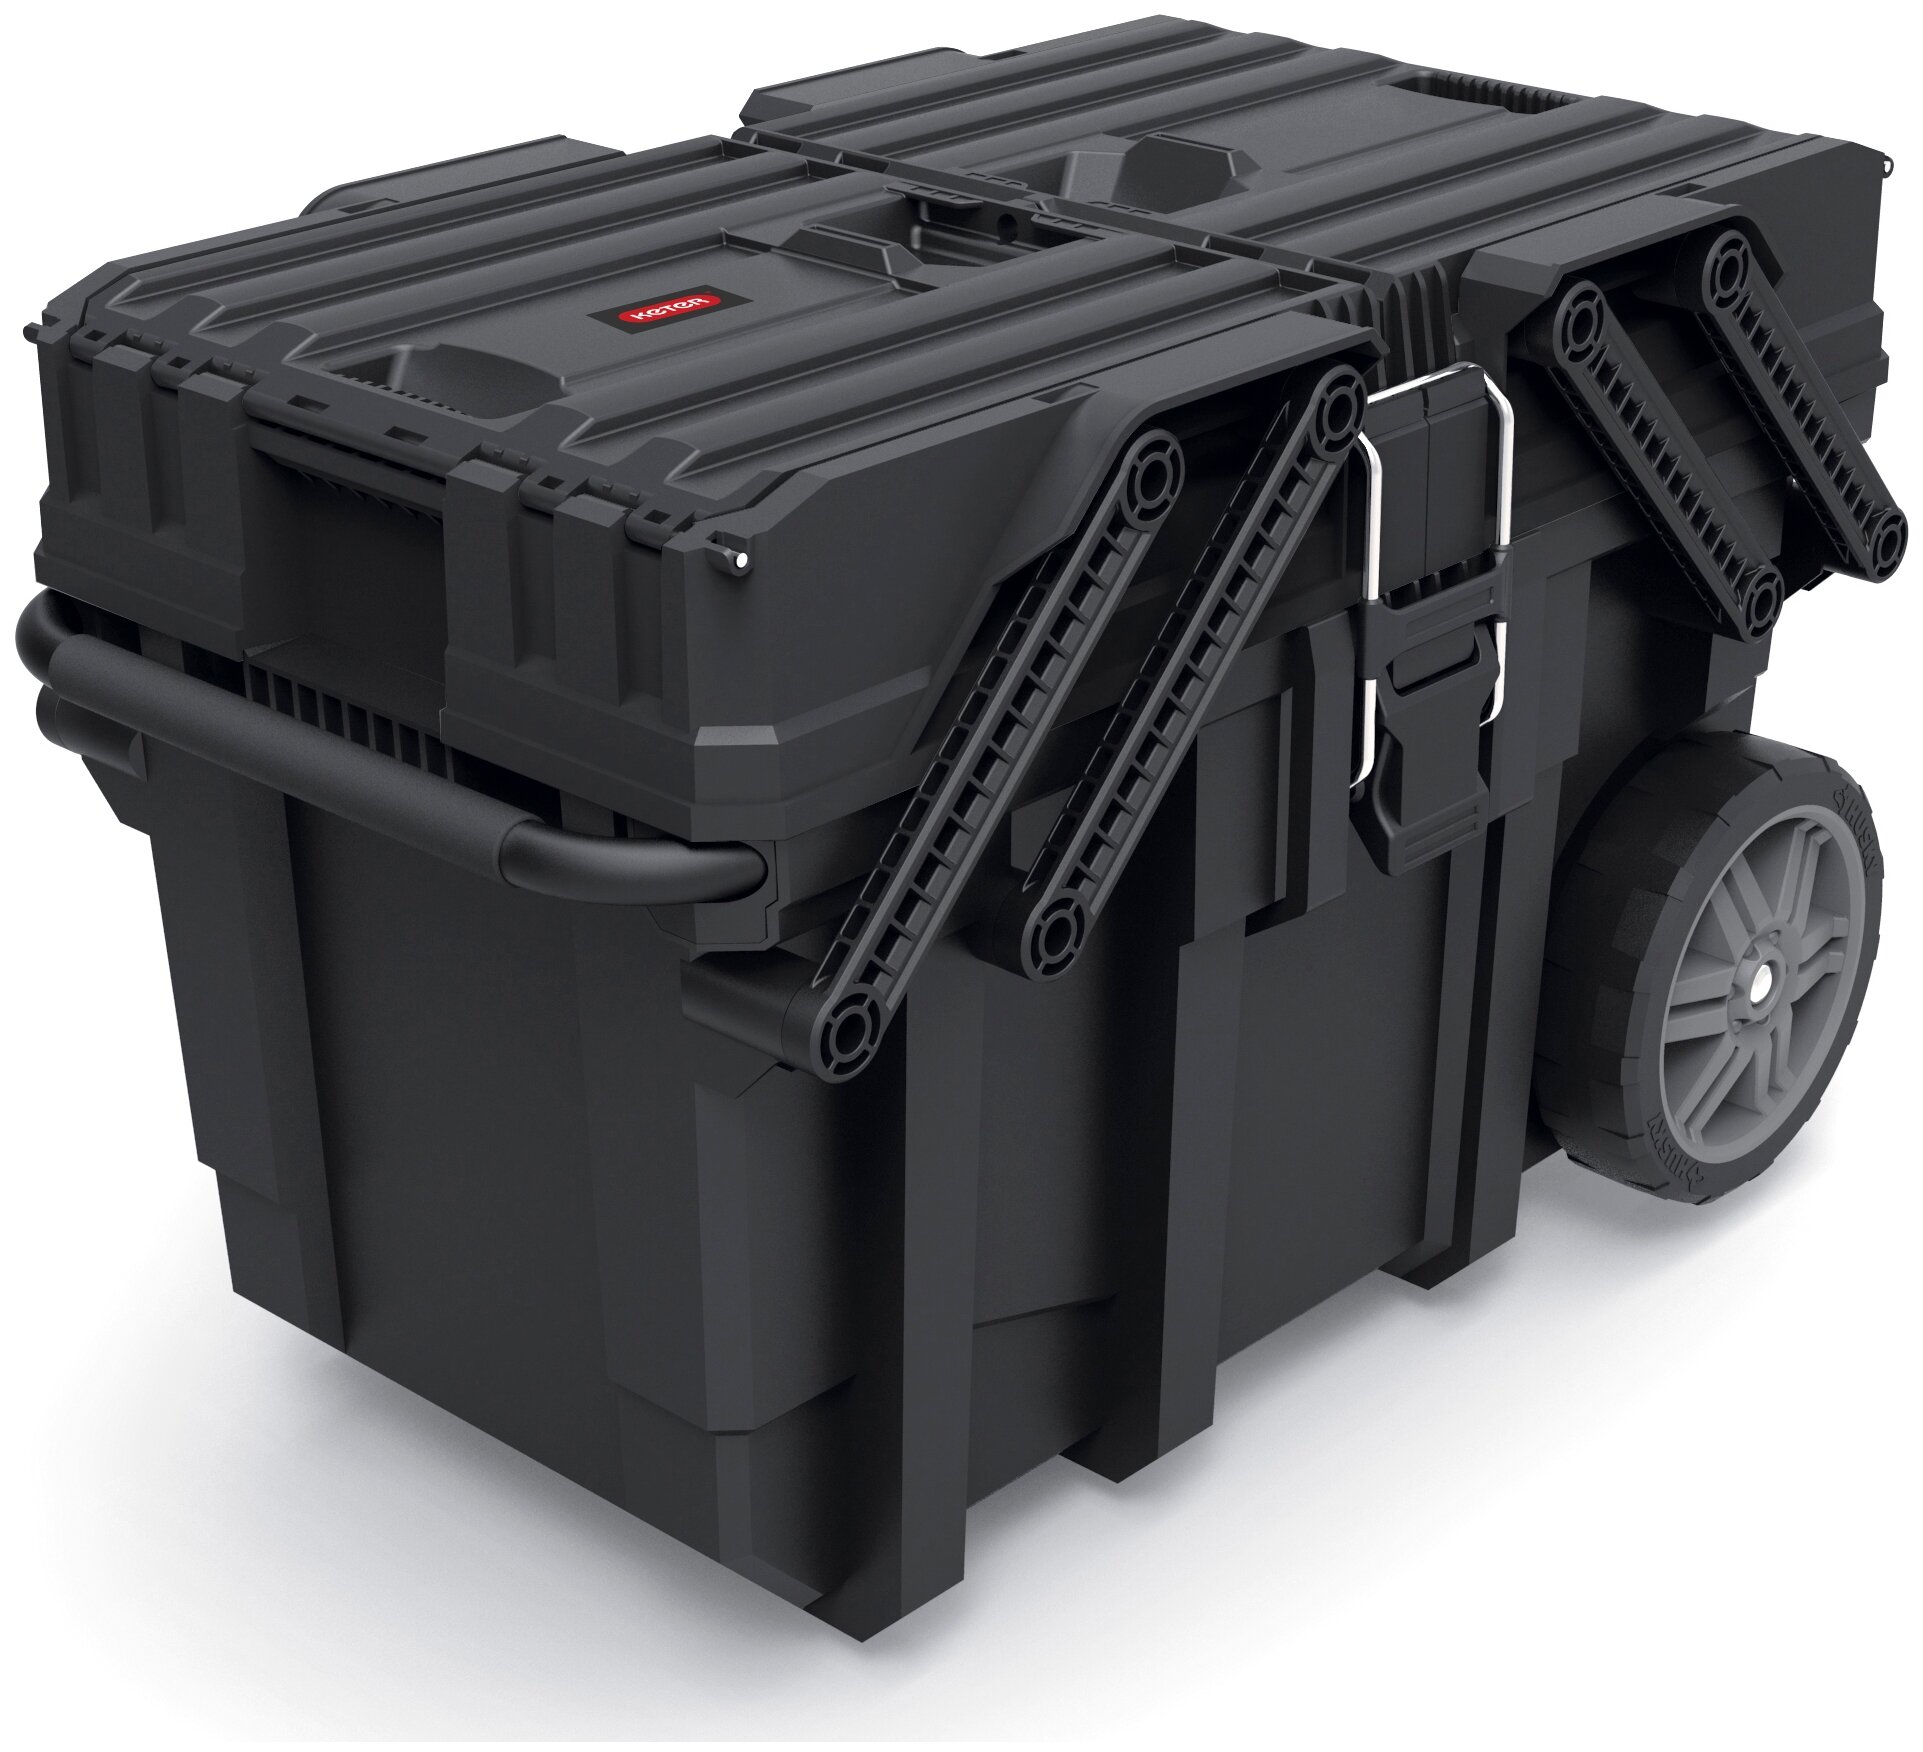 Ящик-тележка KETER Cantilever mobile cart job box (17203037) 64.6x37.3x41 см